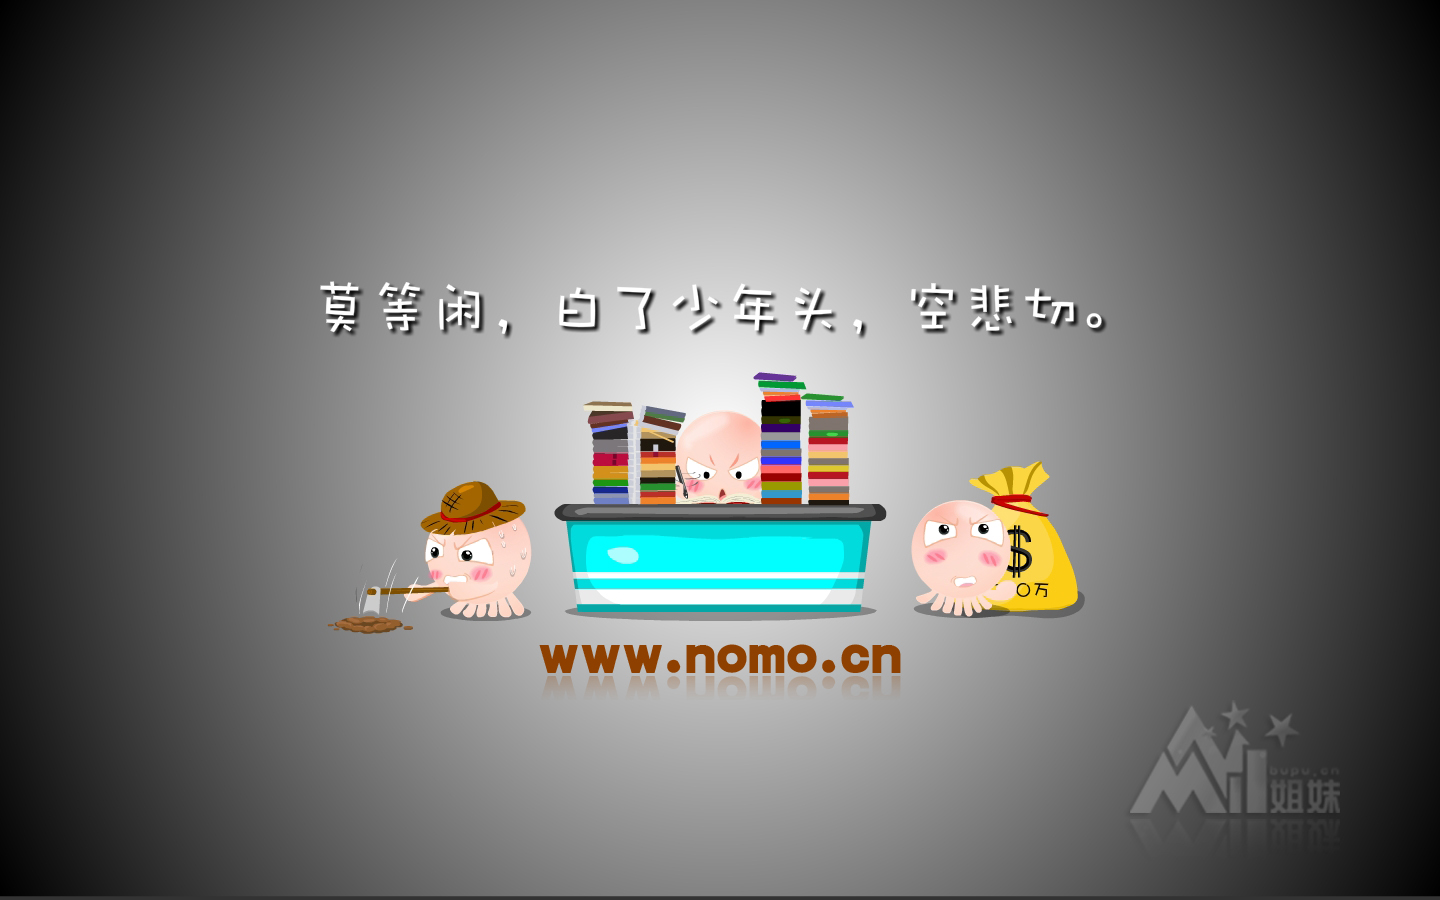 NOMO - -1440x900